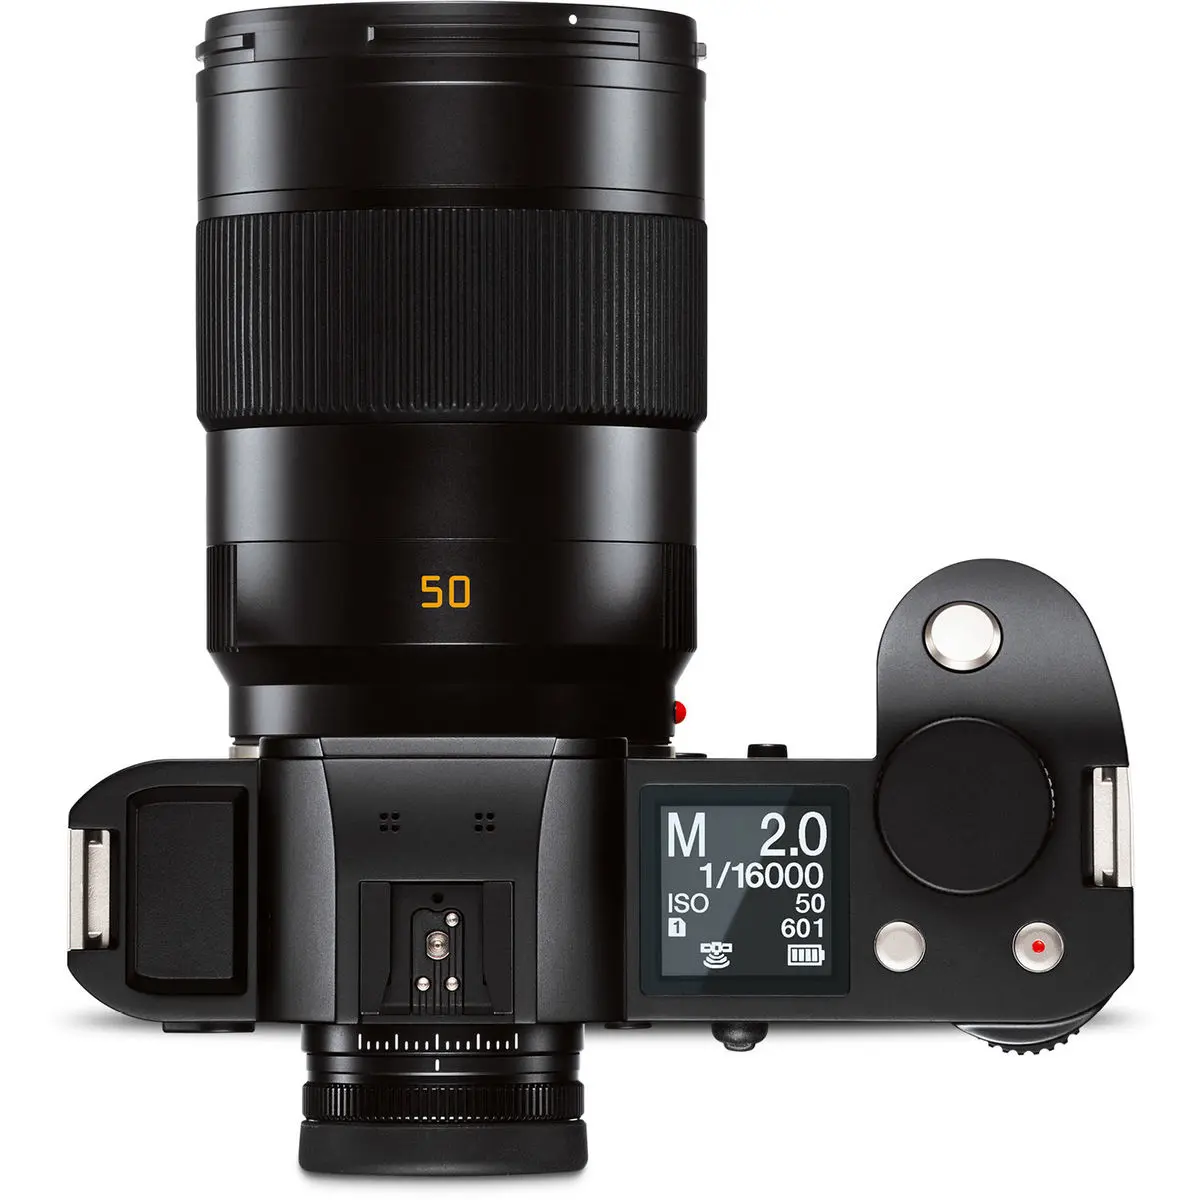 4. Leica APO-Summicron-SL 50mm f/2 Asph. Lens